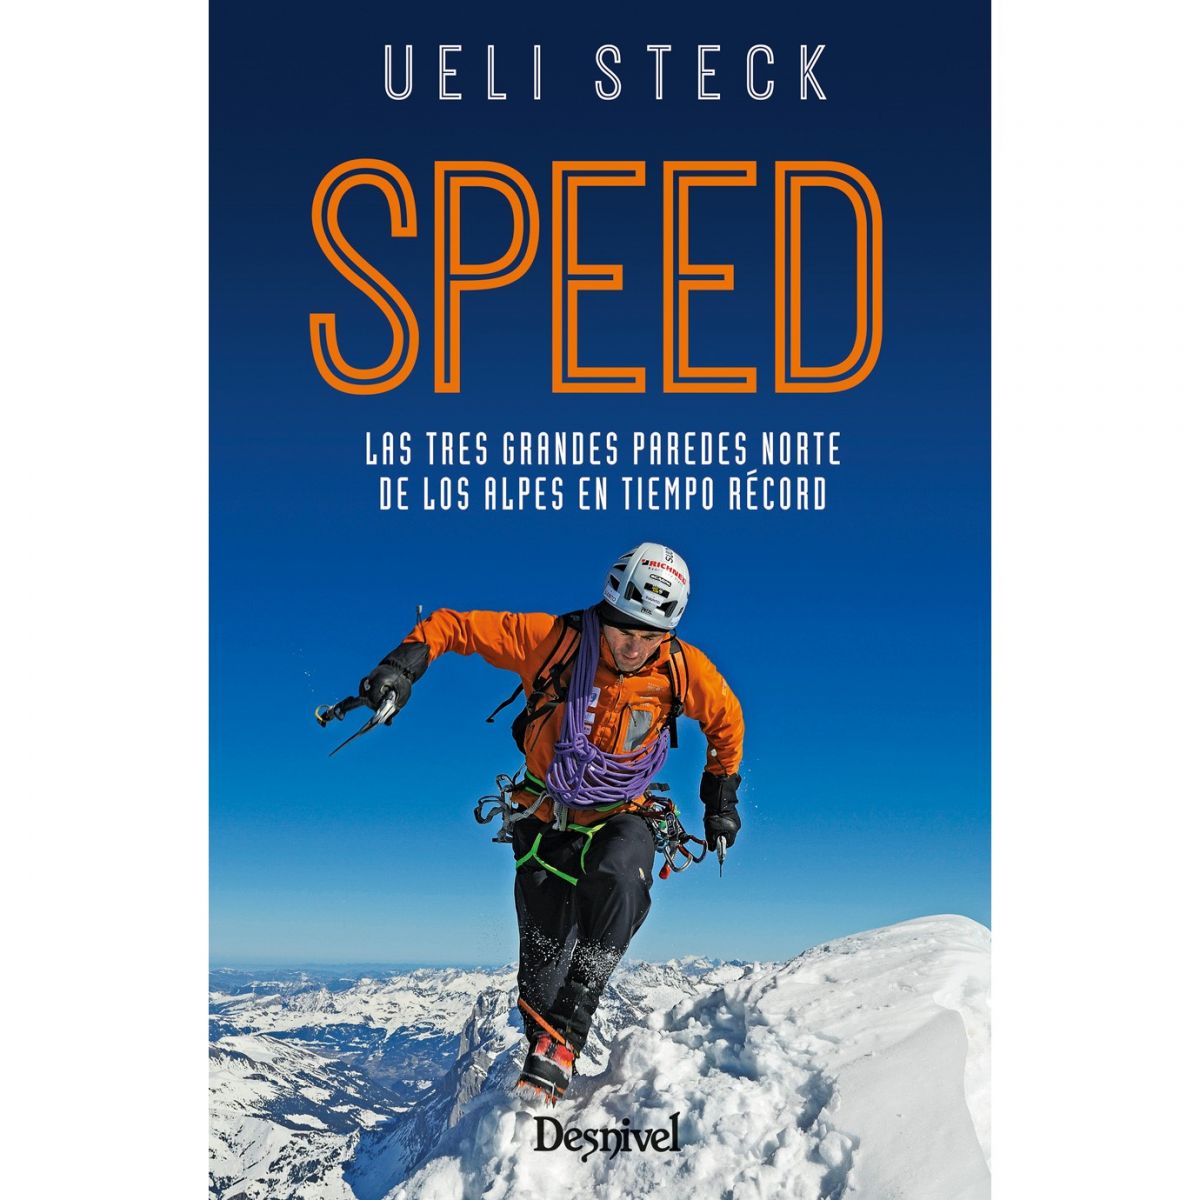 Speed, Ueli Steck